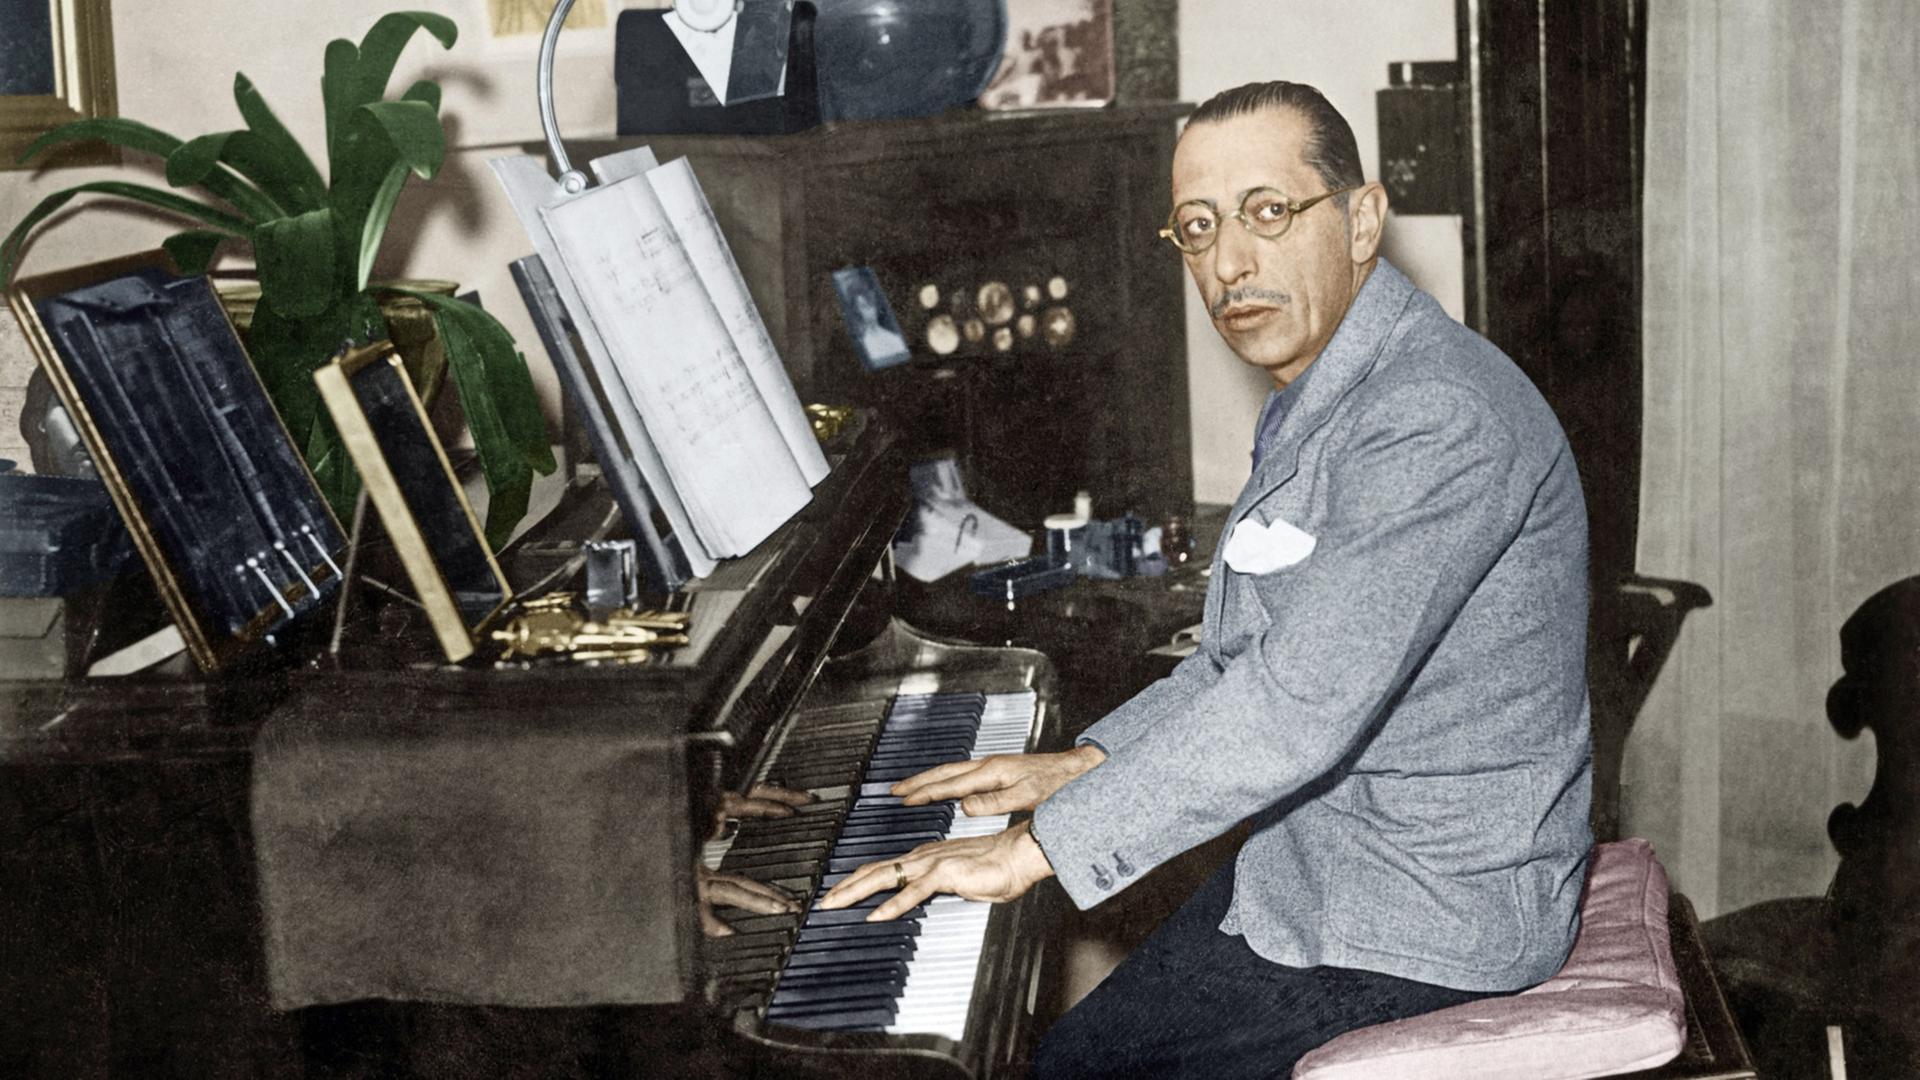 Ein Mann mit streng zurückgekämmten Haaren sitzt am Klavier und blickt durch eine runde Brille nach links in die Kamera. Er trägt hellgraues Jackett mit weißem Einstecktuch und schwarze Cordhose.